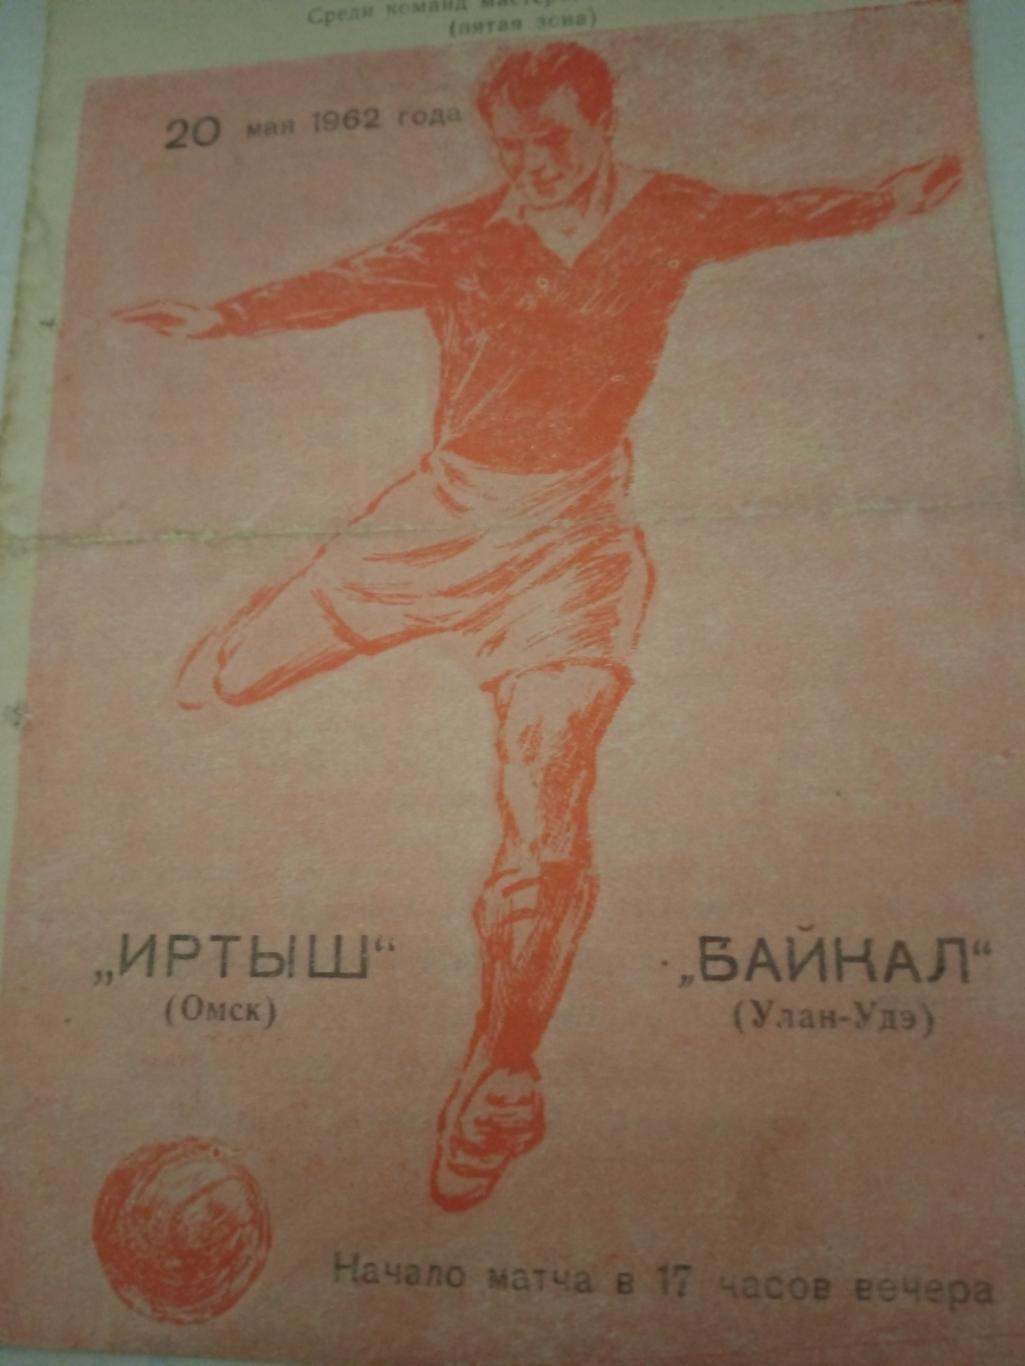 Иртыш Омск - Байкал Улан-Удэ. 20 мая 1962 год